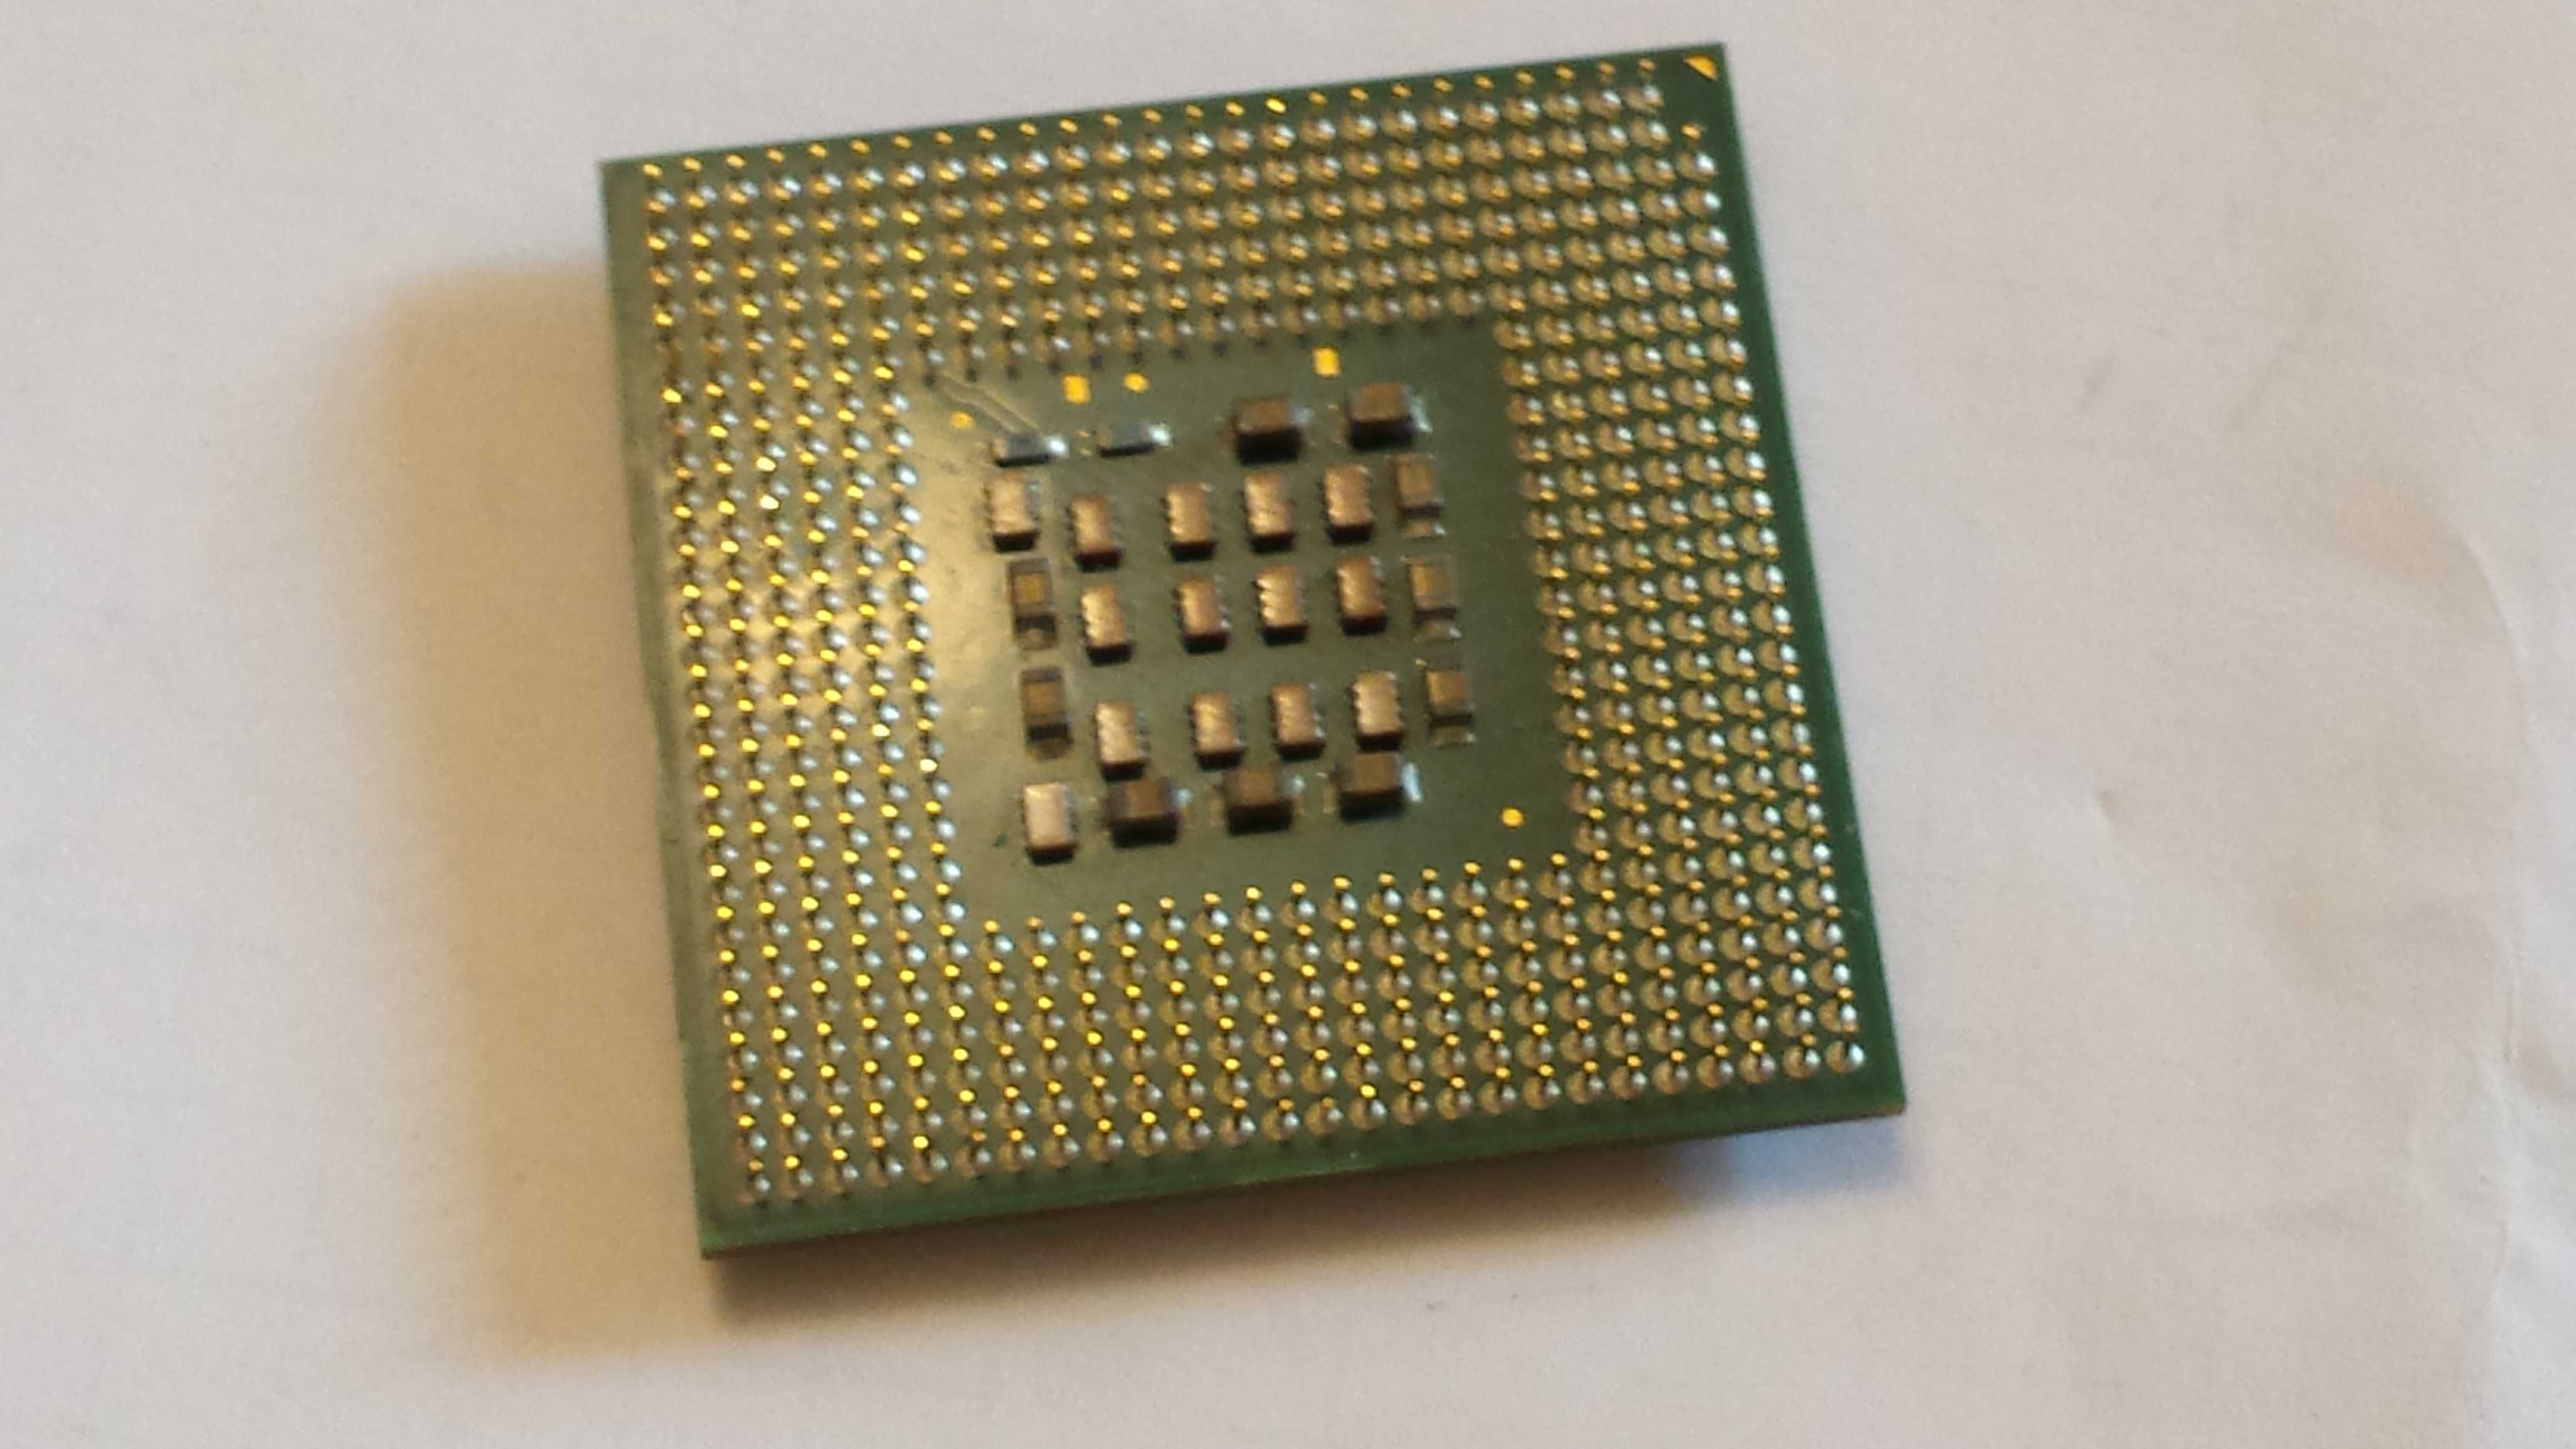 Procesor Intel CELERON 2,5 GHZ pentru calculator